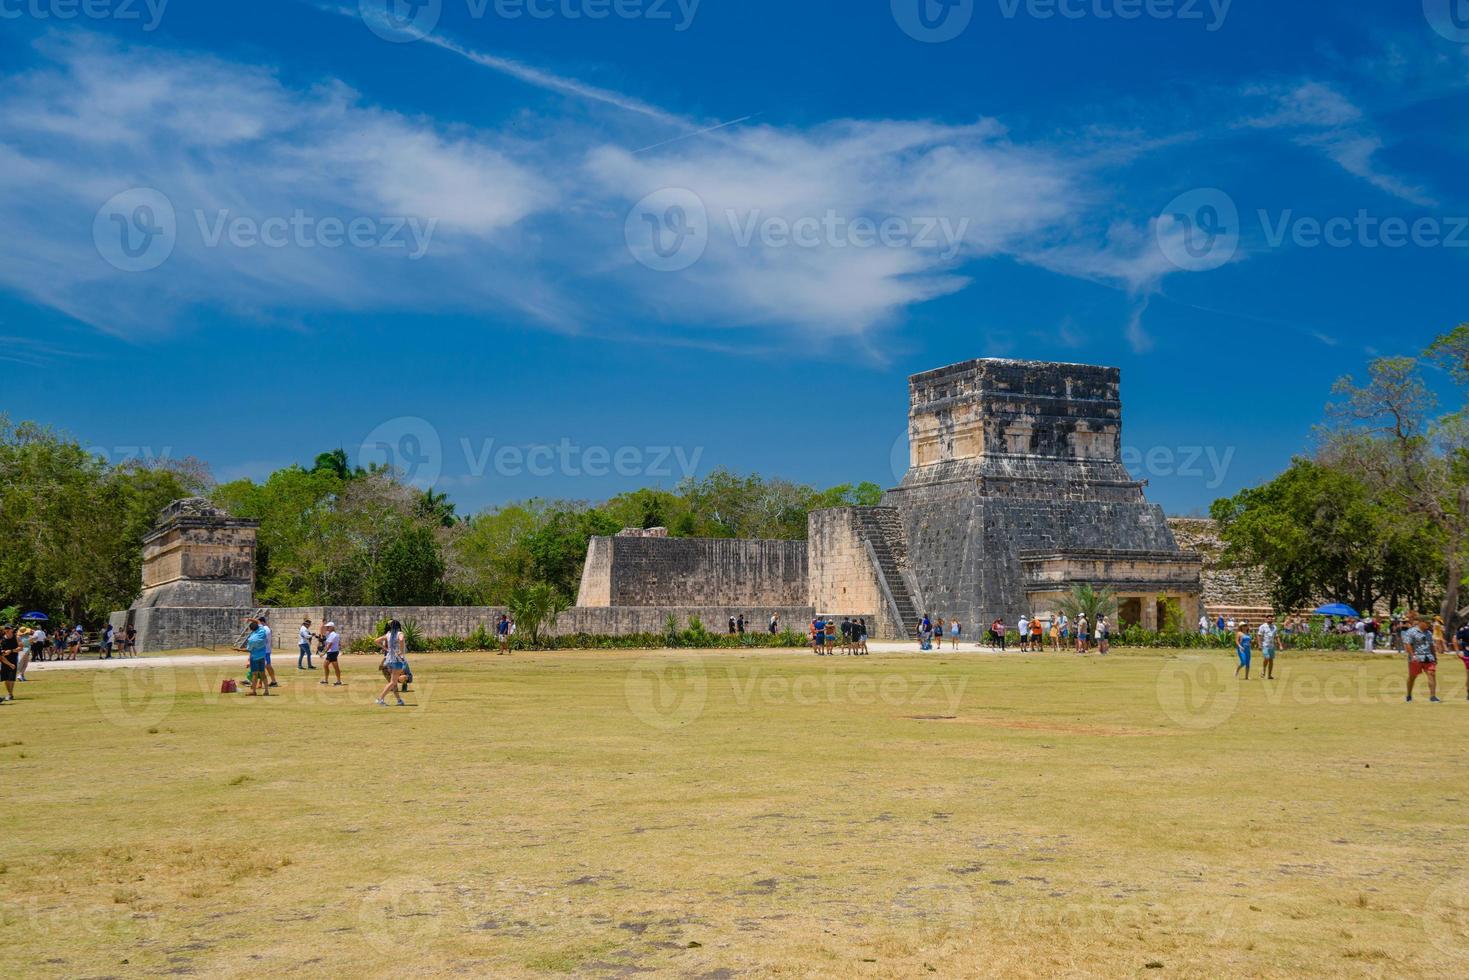 le grand terrain de balle, gran juego de pelote du site archéologique de chichen itza au yucatan, mexique photo